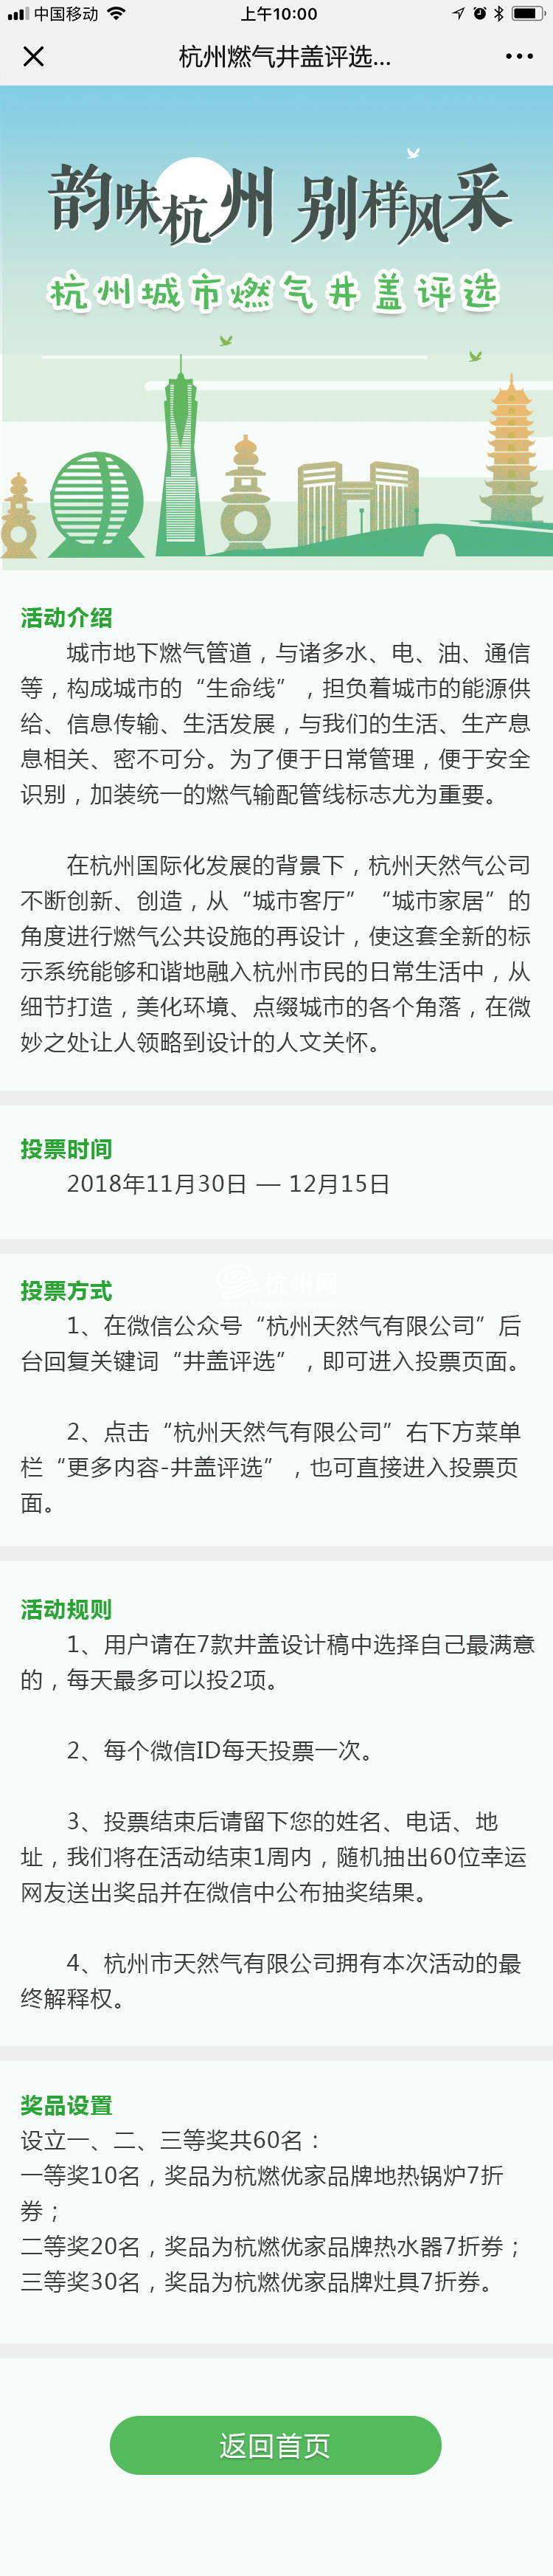 杭州燃气井盖评选活动页面设计(01)